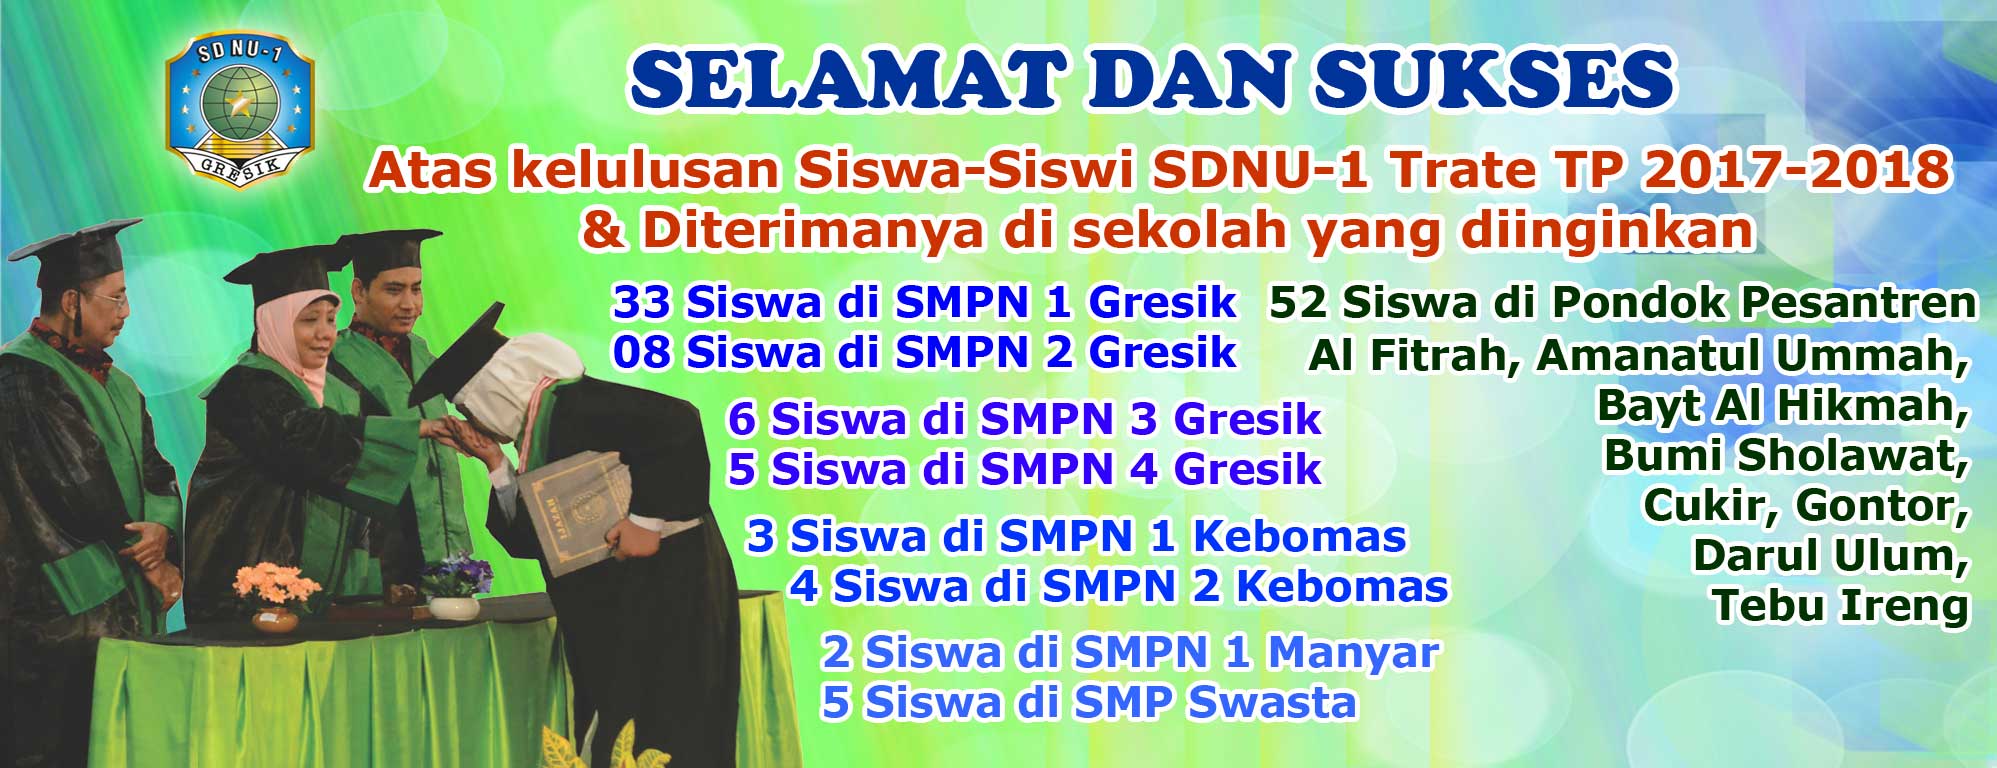 Selamat dan Sukses atas kelulusan Siswa-Siswi SDNU-1 Trate Gresik TP. 2017-2018